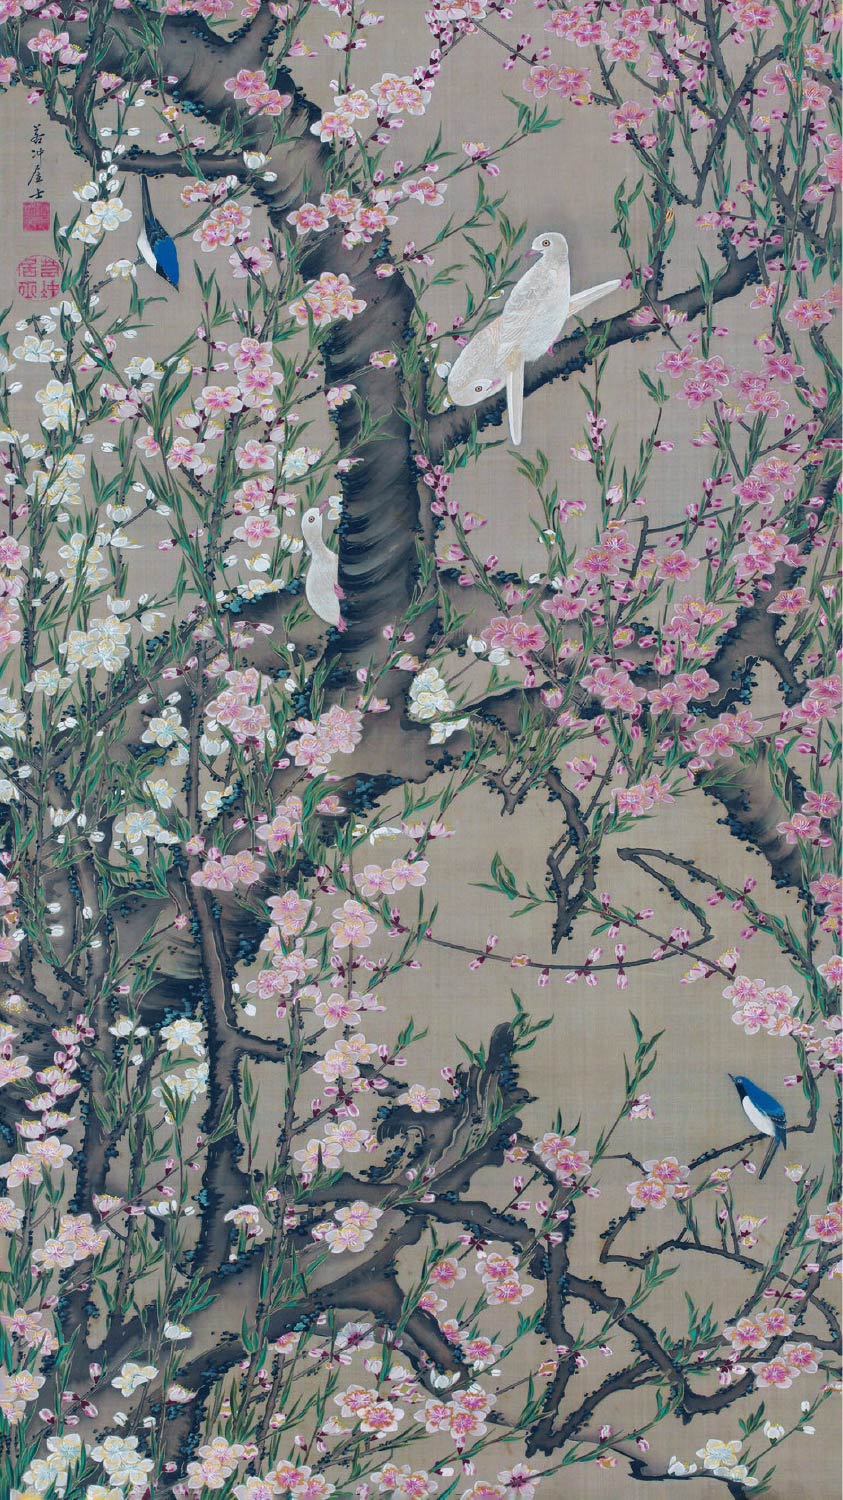 【無料壁紙】伊藤 若冲「桃花小禽図 (18世紀)」 / Ito Jakuchu_Toka Shokin-zu(Peach Blossoms and Small Birds) (18th century)